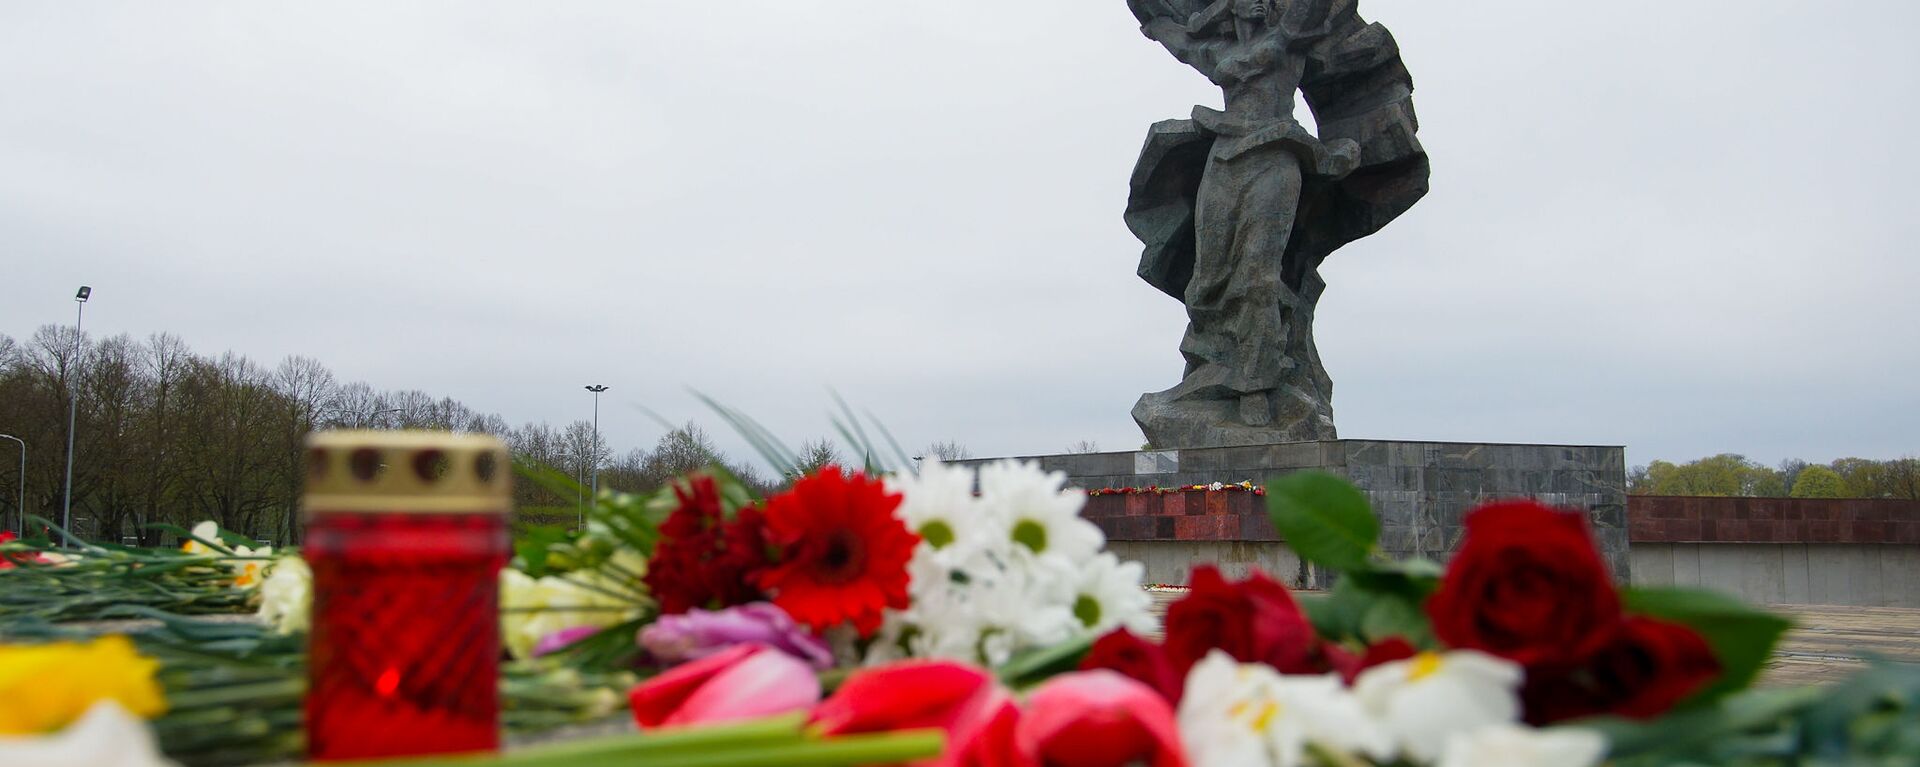 Цветы у памятника Освободителям 9 мая - Sputnik Латвия, 1920, 03.02.2021